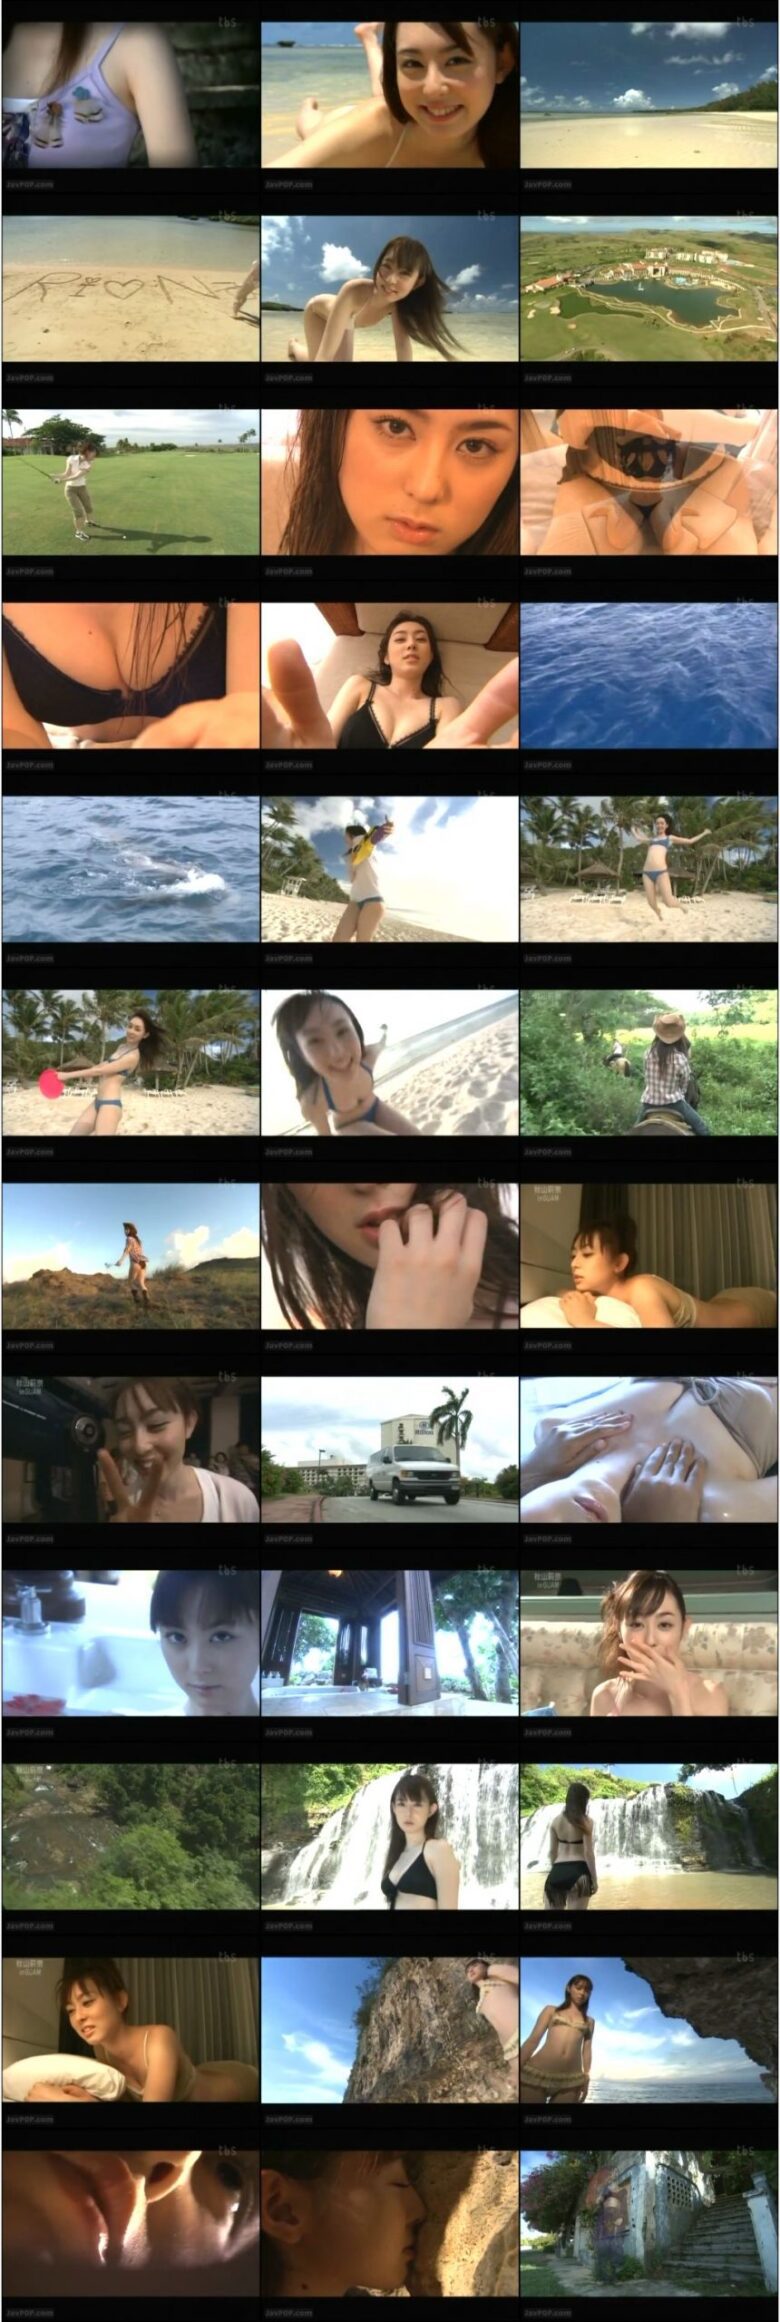 [VPBF-15280] 秋山莉奈 Rina Akiyama – Beach Angels ビーチエンジェルズ 秋山莉奈 in グァム